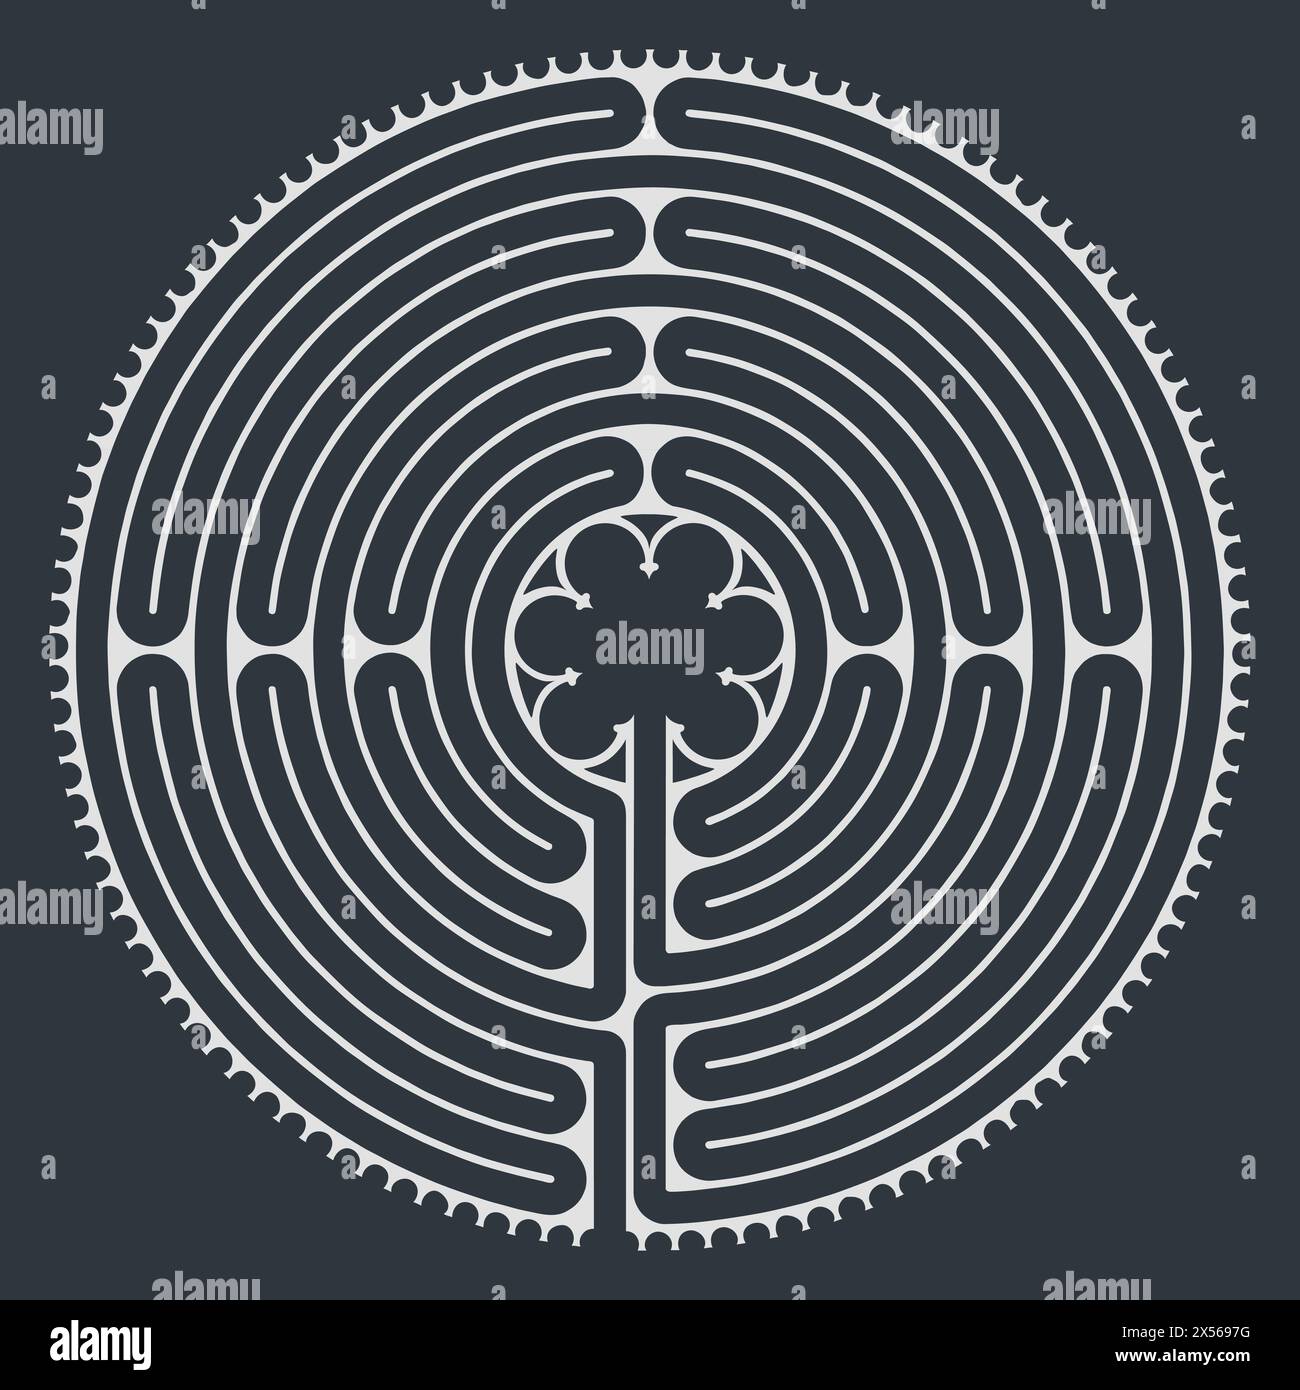 Labyrinth Kathedrale von Chartres Illustration Vektor - Symbolismus Meditation Geschichte - Blumenmotiv - Heilige Geometrie - Schwarz und weiß Stock Vektor